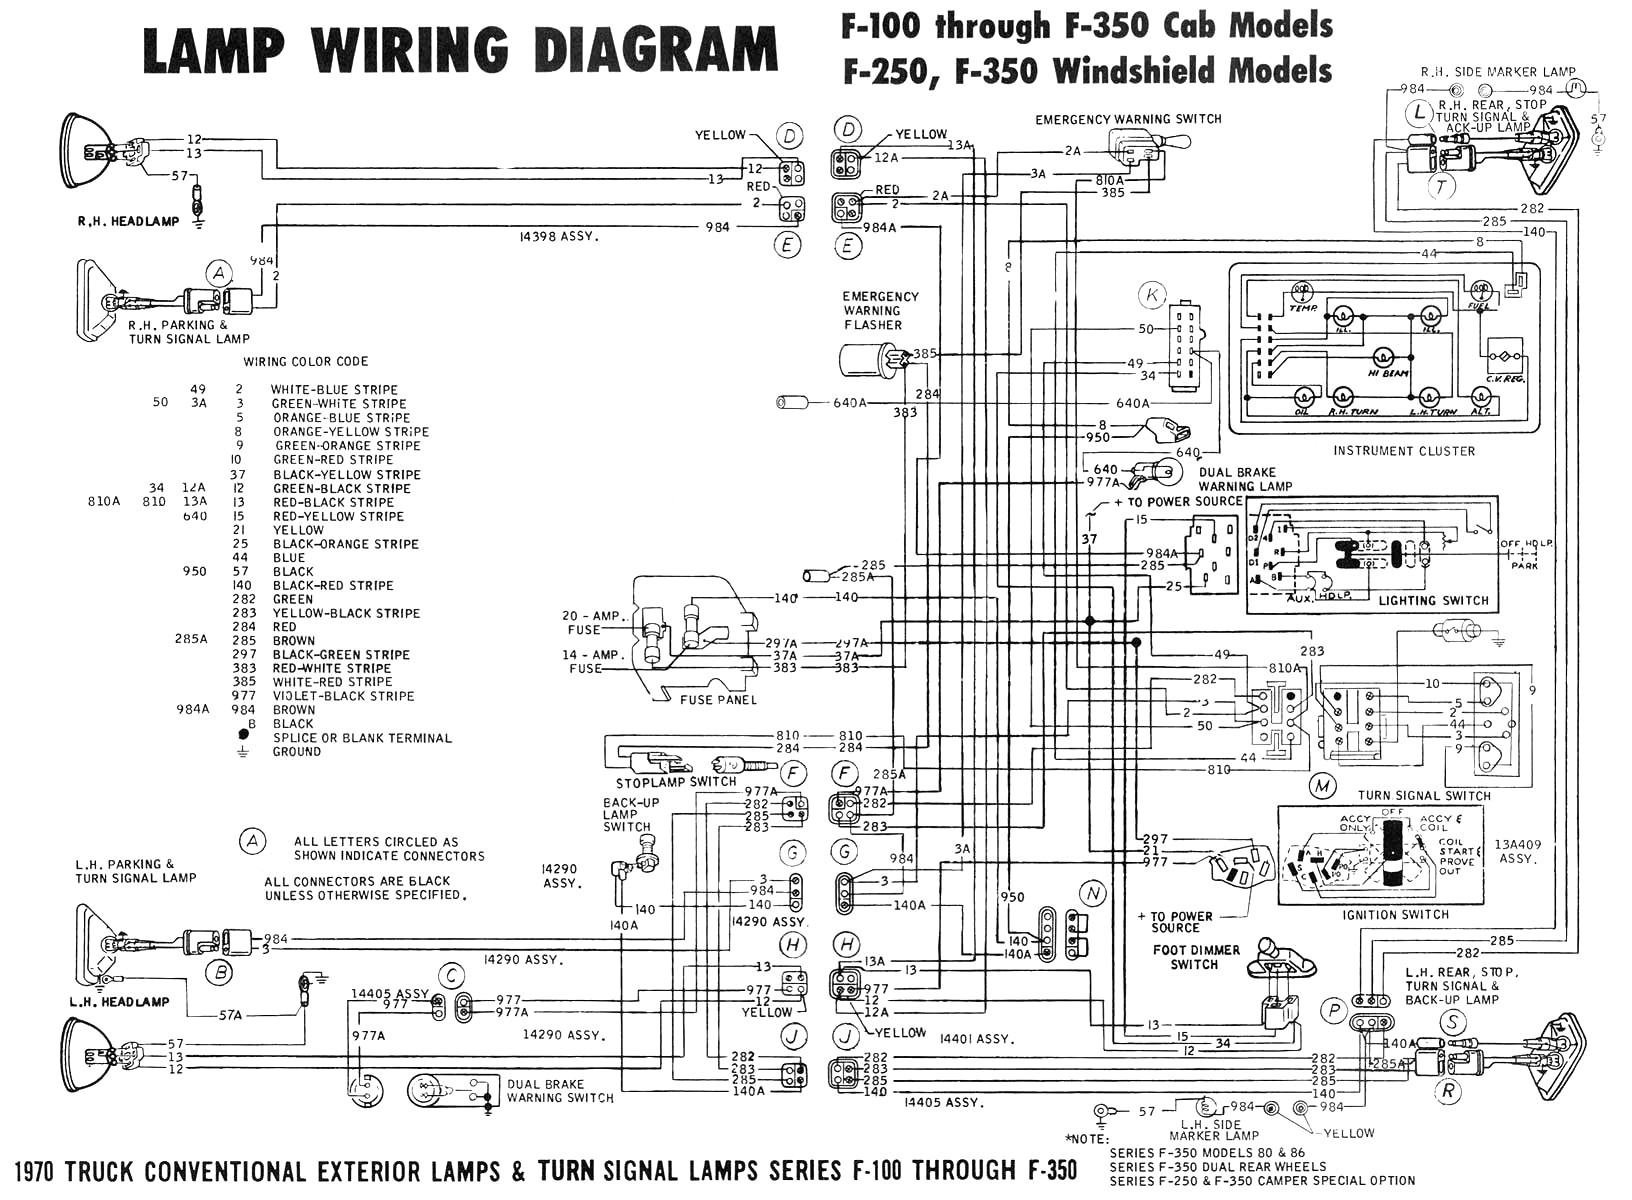 wire diagram 60 ml schema wiring diagram wire diagram 60 ml